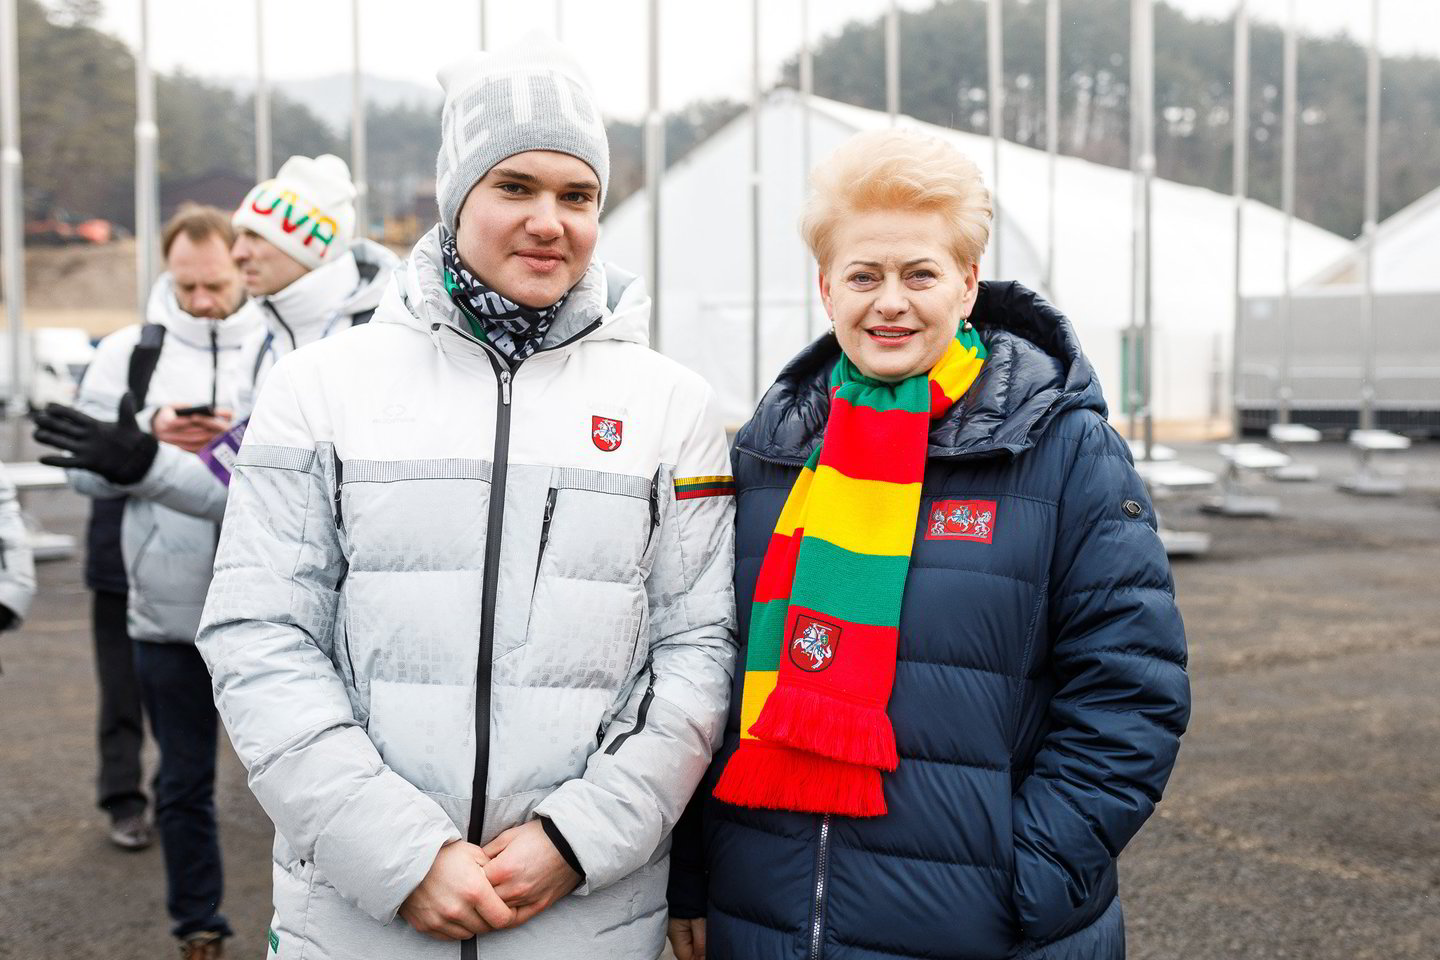  A.Drukarovas jau anksčiau neslėpė, kad nekantrauja sutikti D.Grybauskaitę.<br> V.Dranginio nuotr.